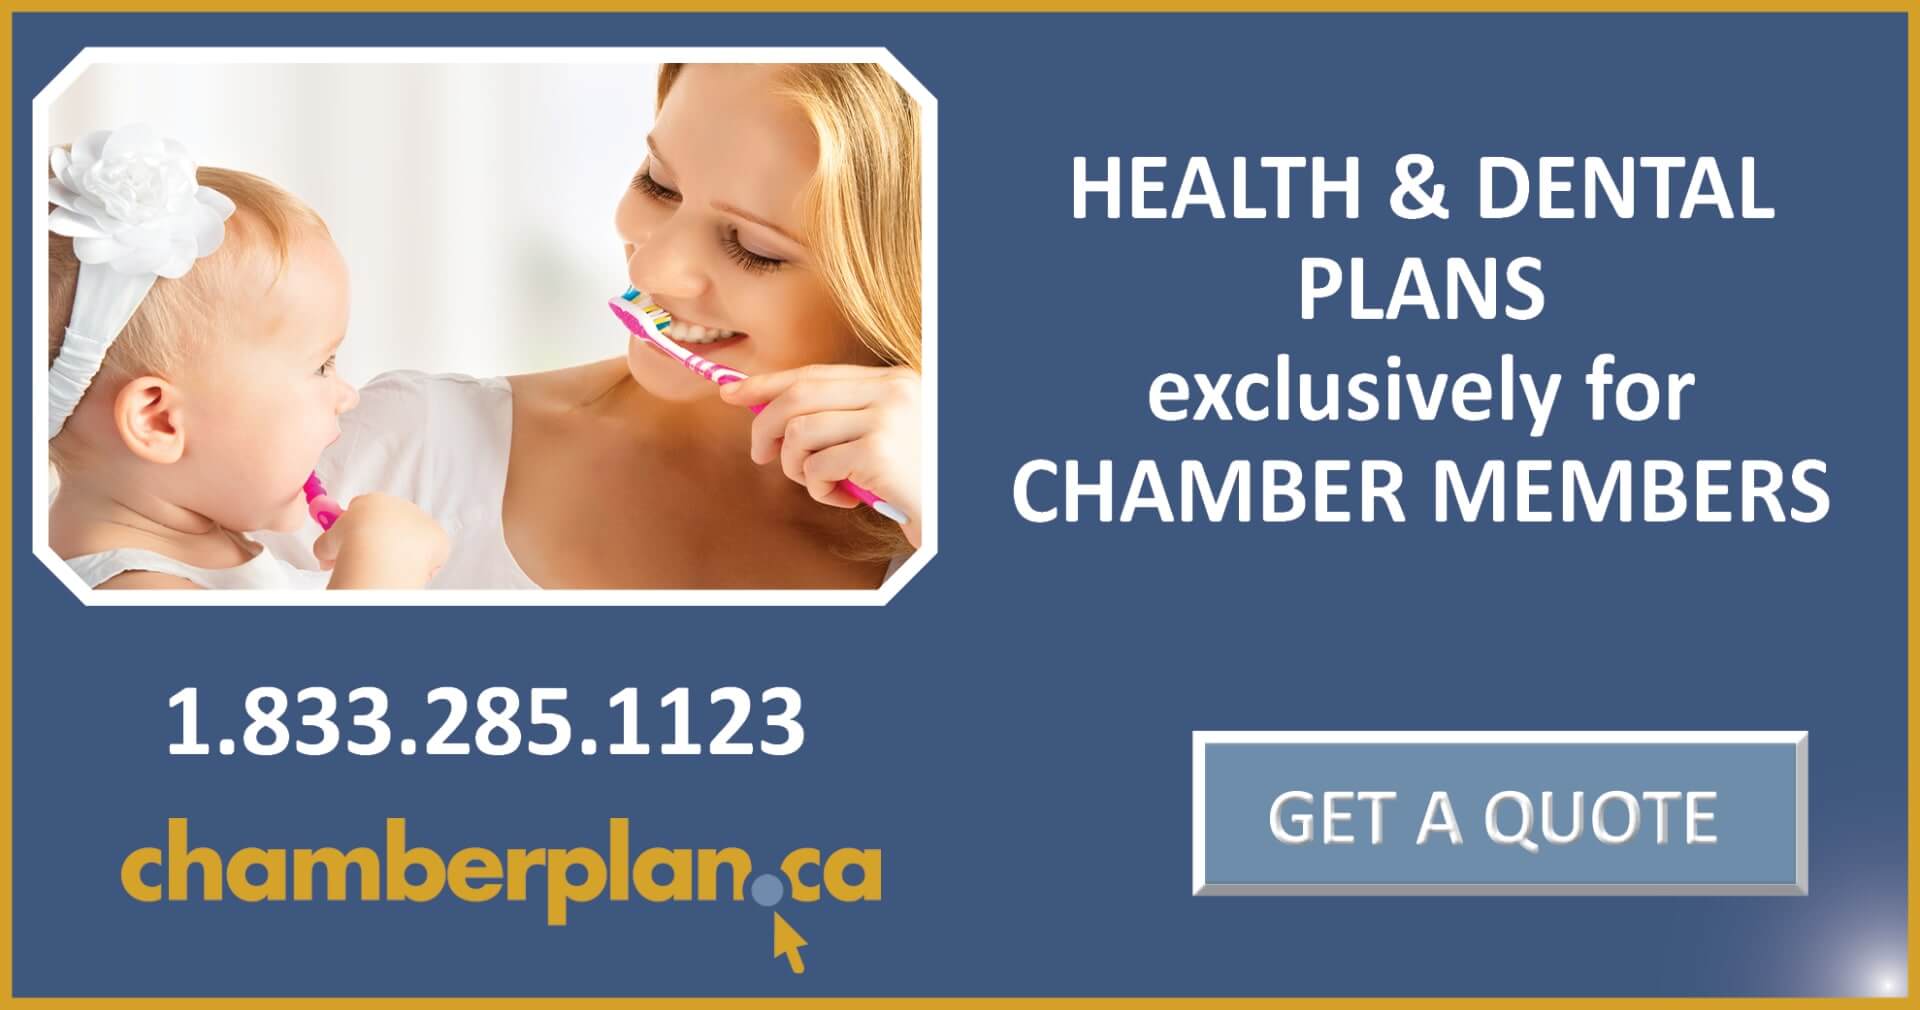 Health & Dental plans for chamber member